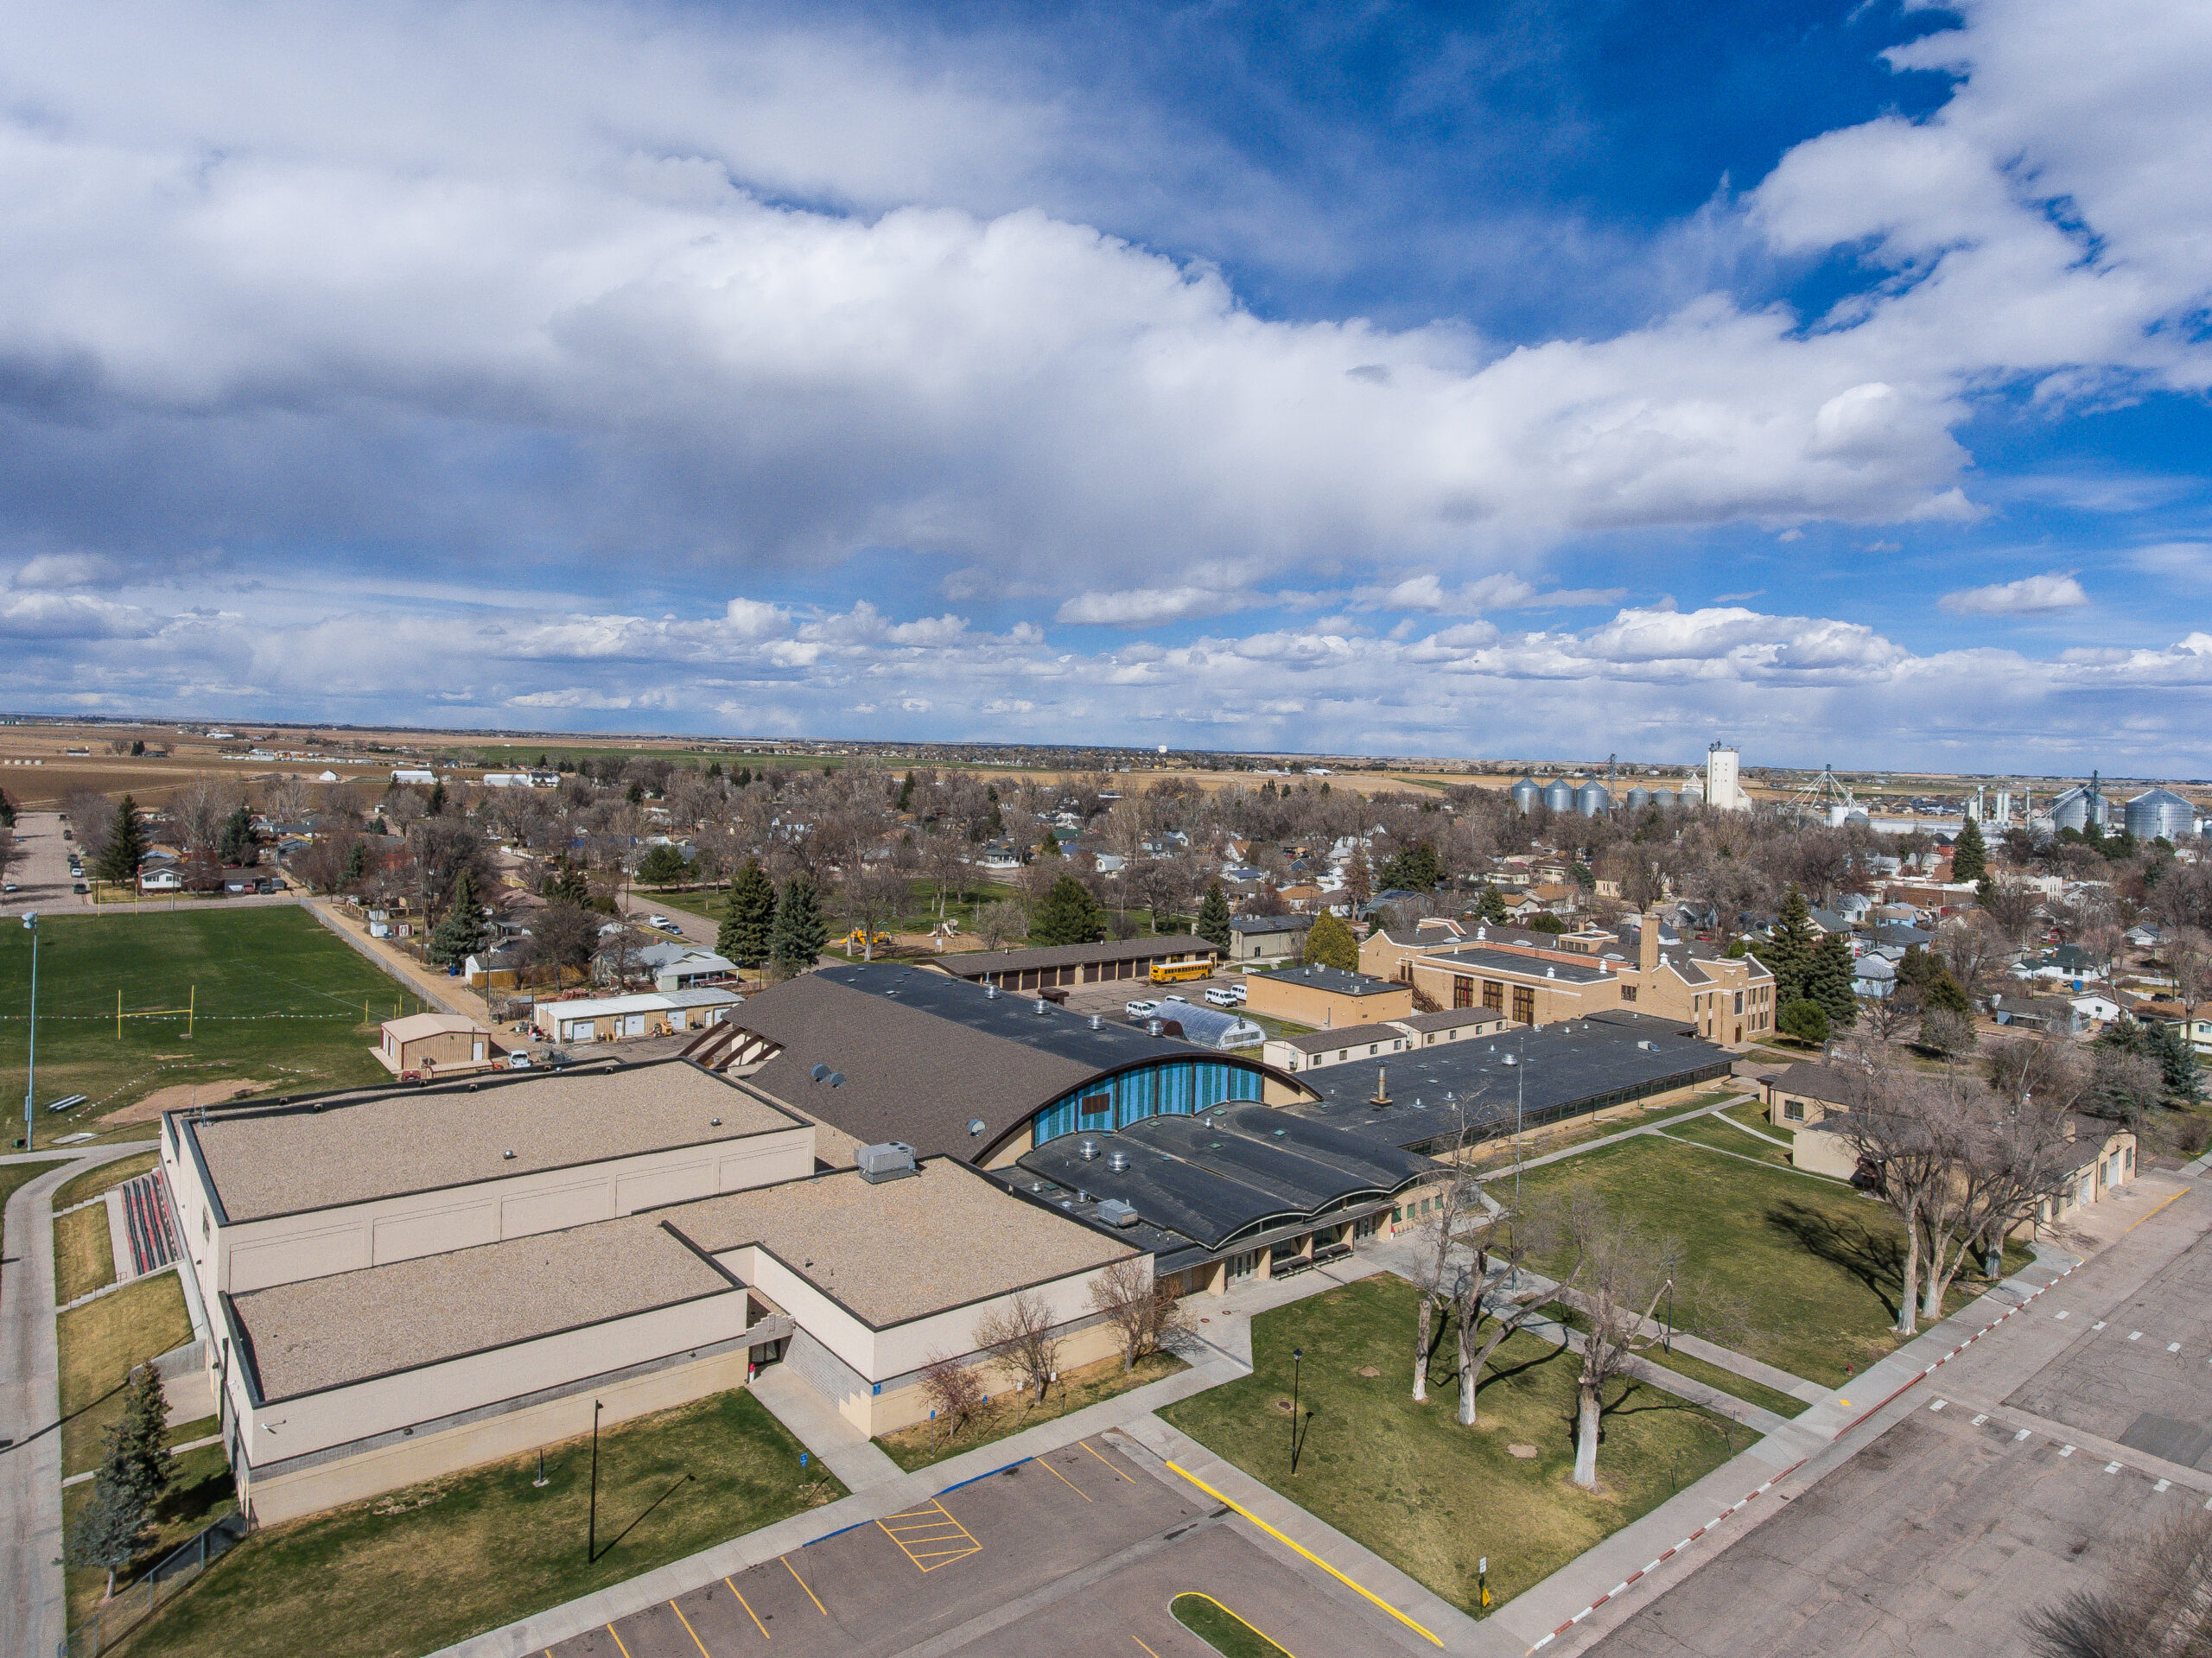 Overhead shot of Eaton High School